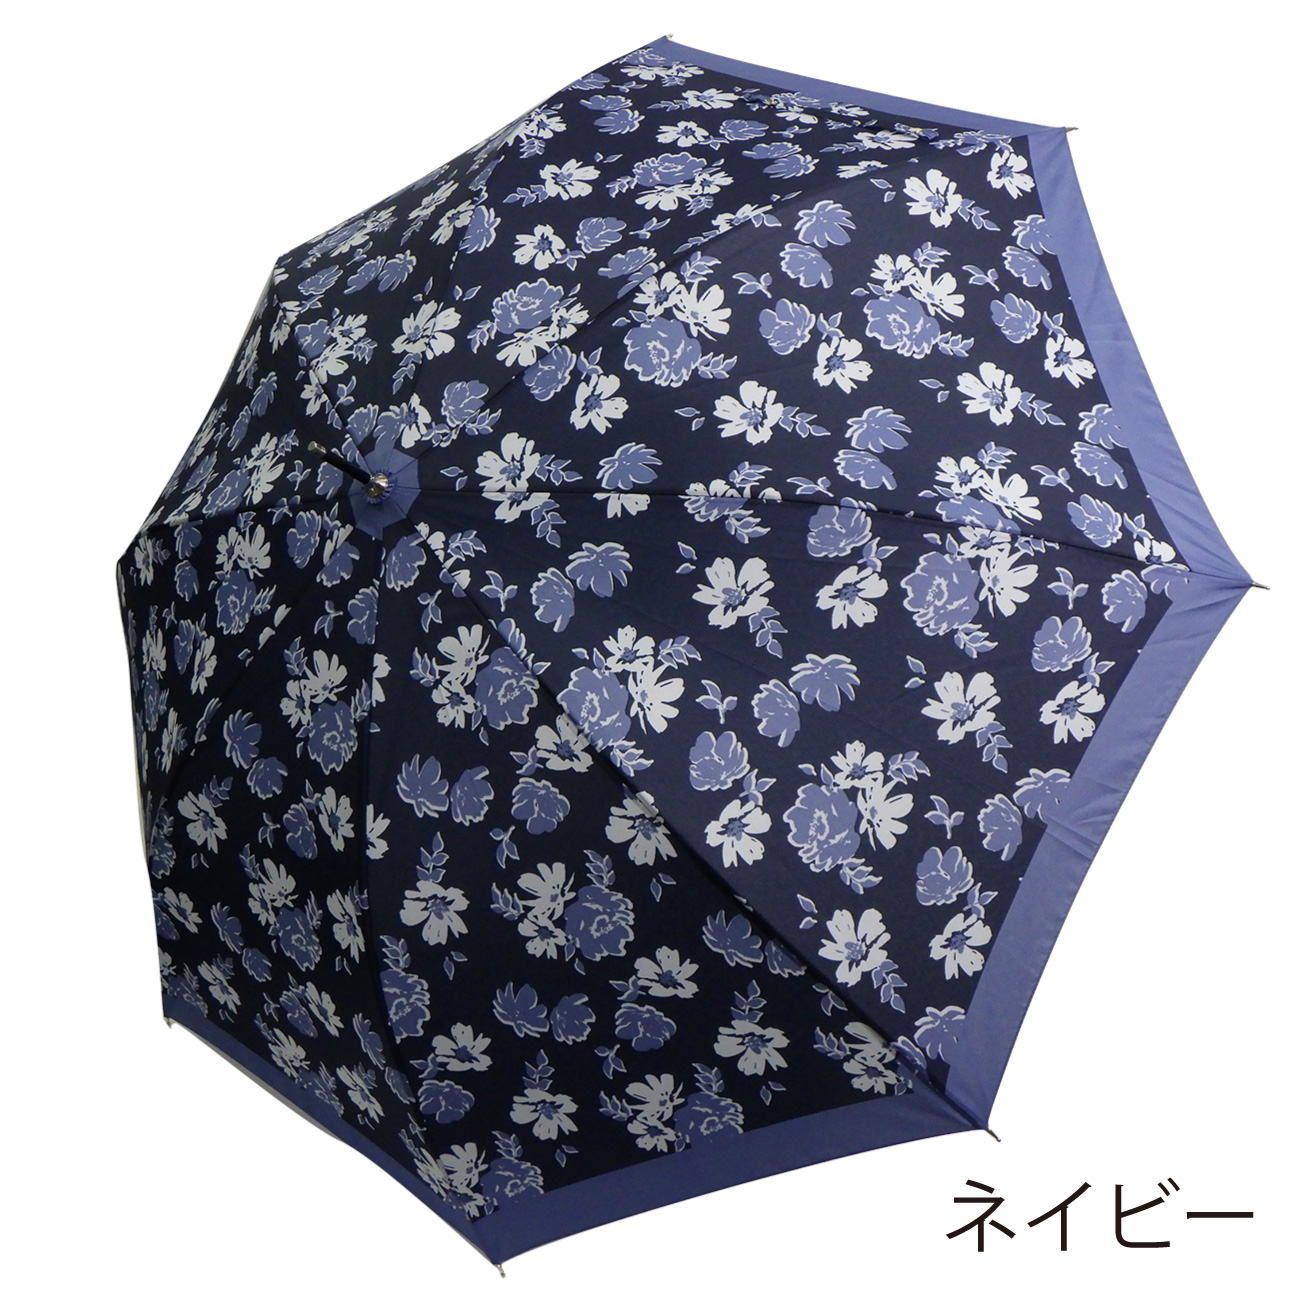 傘 雨傘 長傘 レディース 超はっ水 ジャンプ傘 花柄 女性 婦人 超撥水